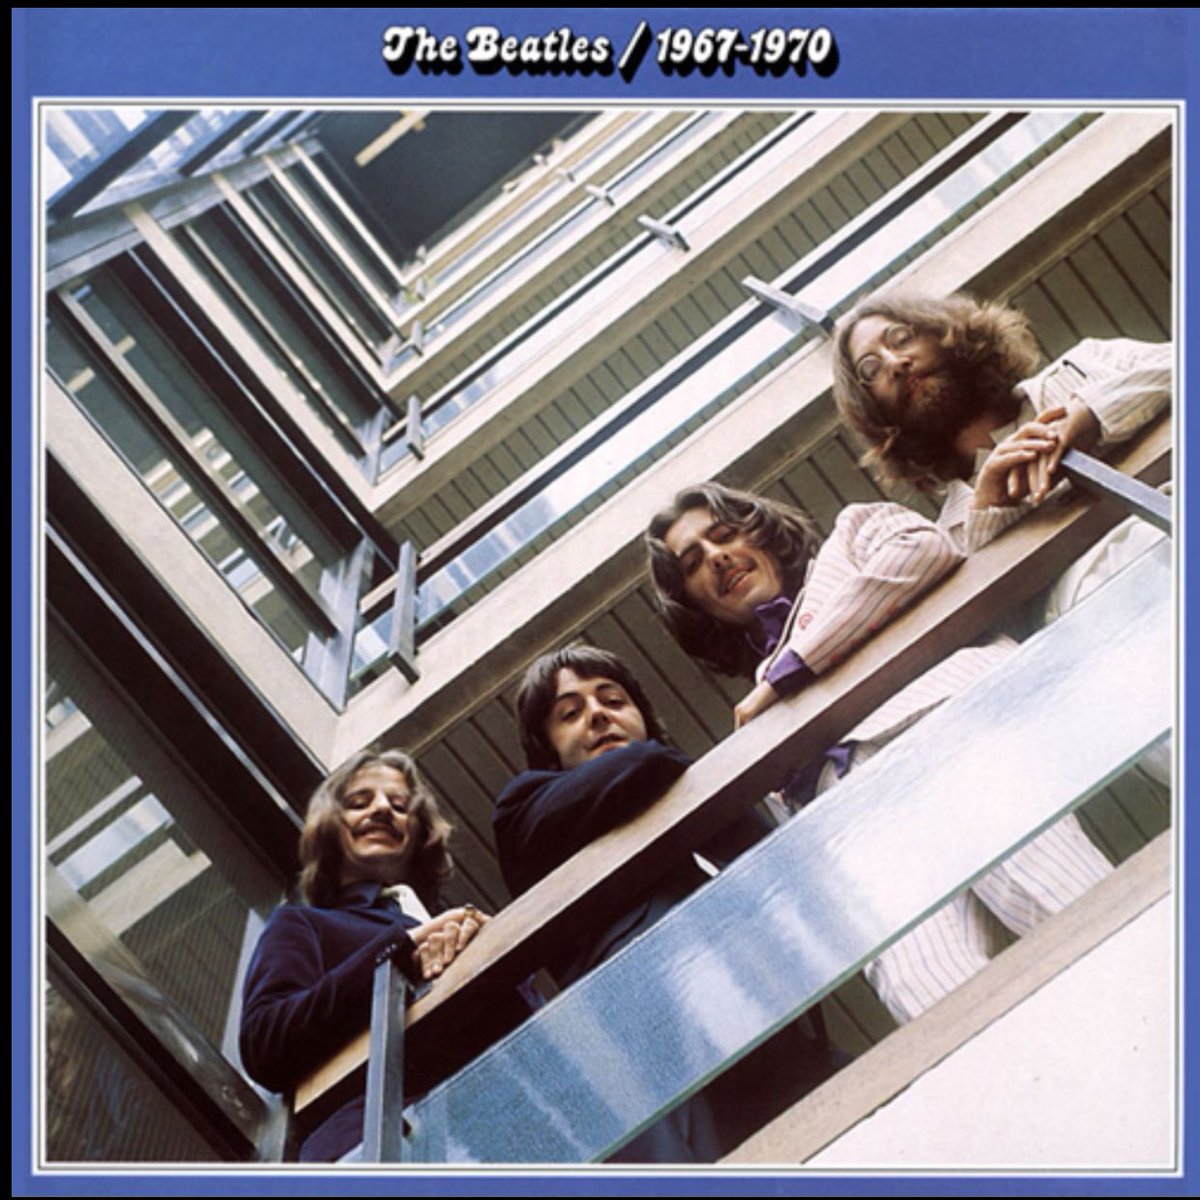 アしや 芦谷 耕平 ジャスティスリーグは エンディングテーマにcome Together 使ってくれただけで100万点 ジャスティスリーグ Thebeatles Nowplaying Come Together The Beatles 1967 1970 Disc 2 T Co Ymoo3g2urp T Co Unqhdpvcmq